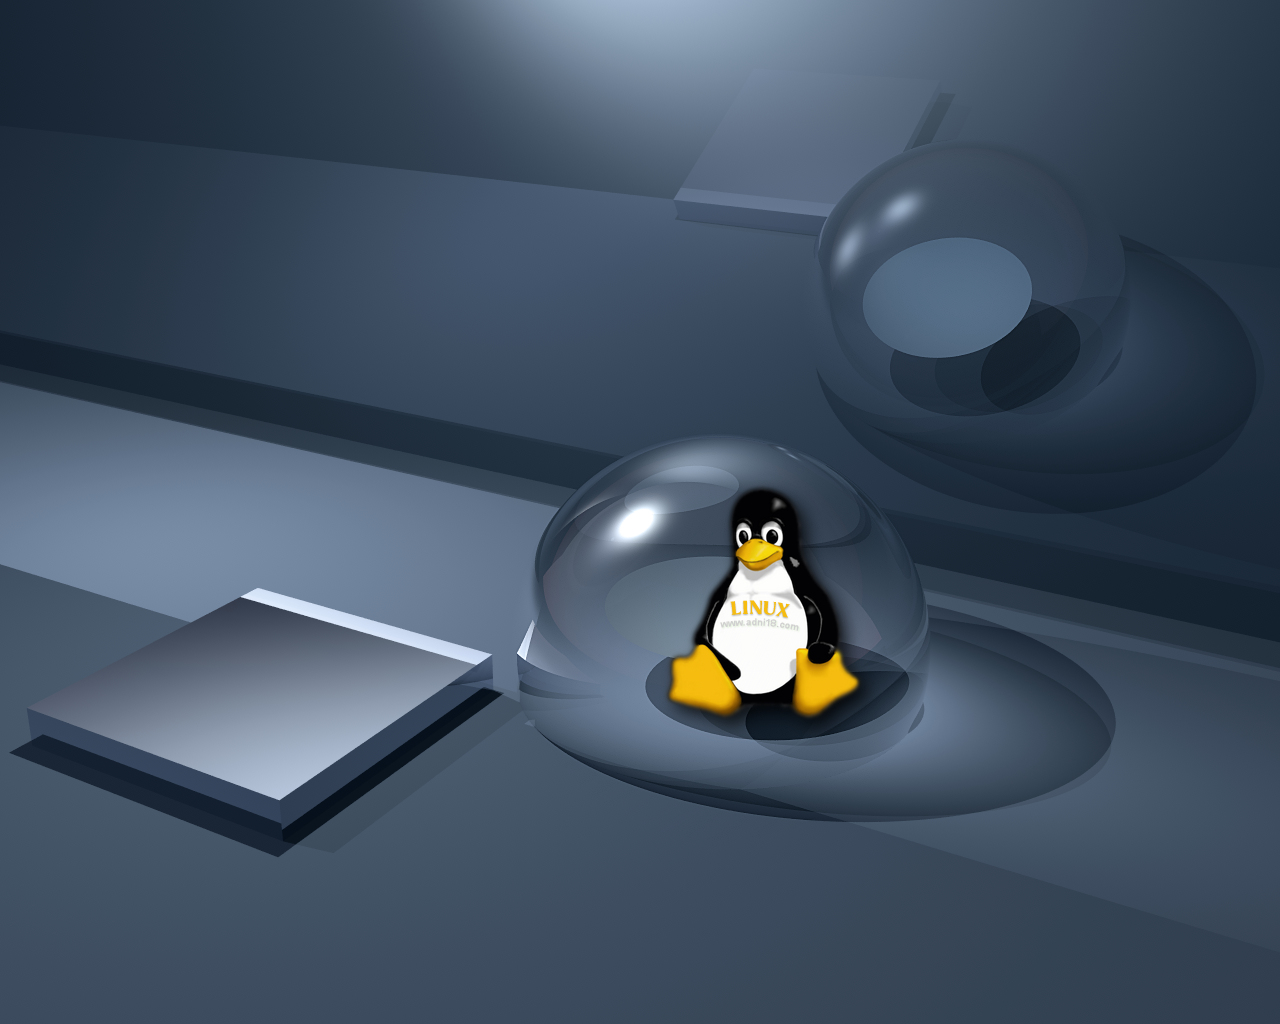 Penguin Fixing Ubuntu Desktop Wallpaper Background, 3d Mechanic Penguin  With Tools, Hd Photography Photo Background Image And Wallpaper for Free  Download